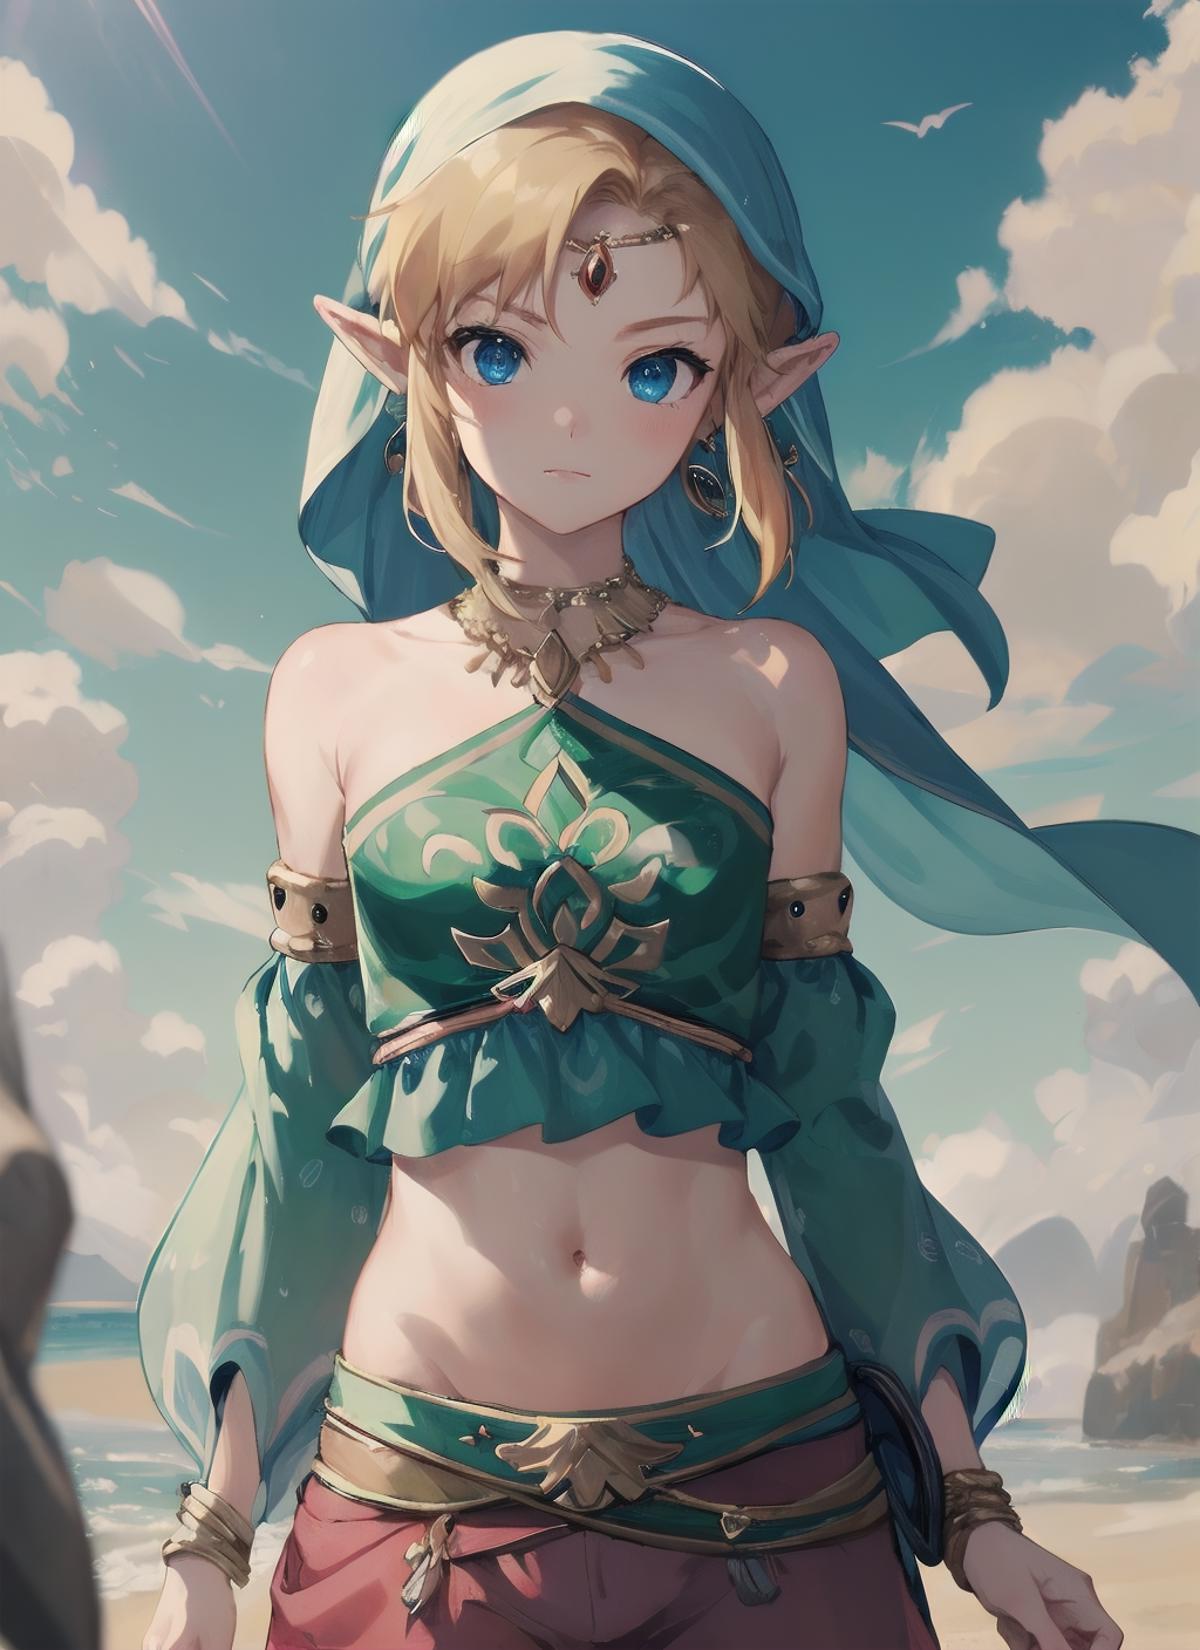 Link Gerudo set | The Legend of Zelda image by Nontime